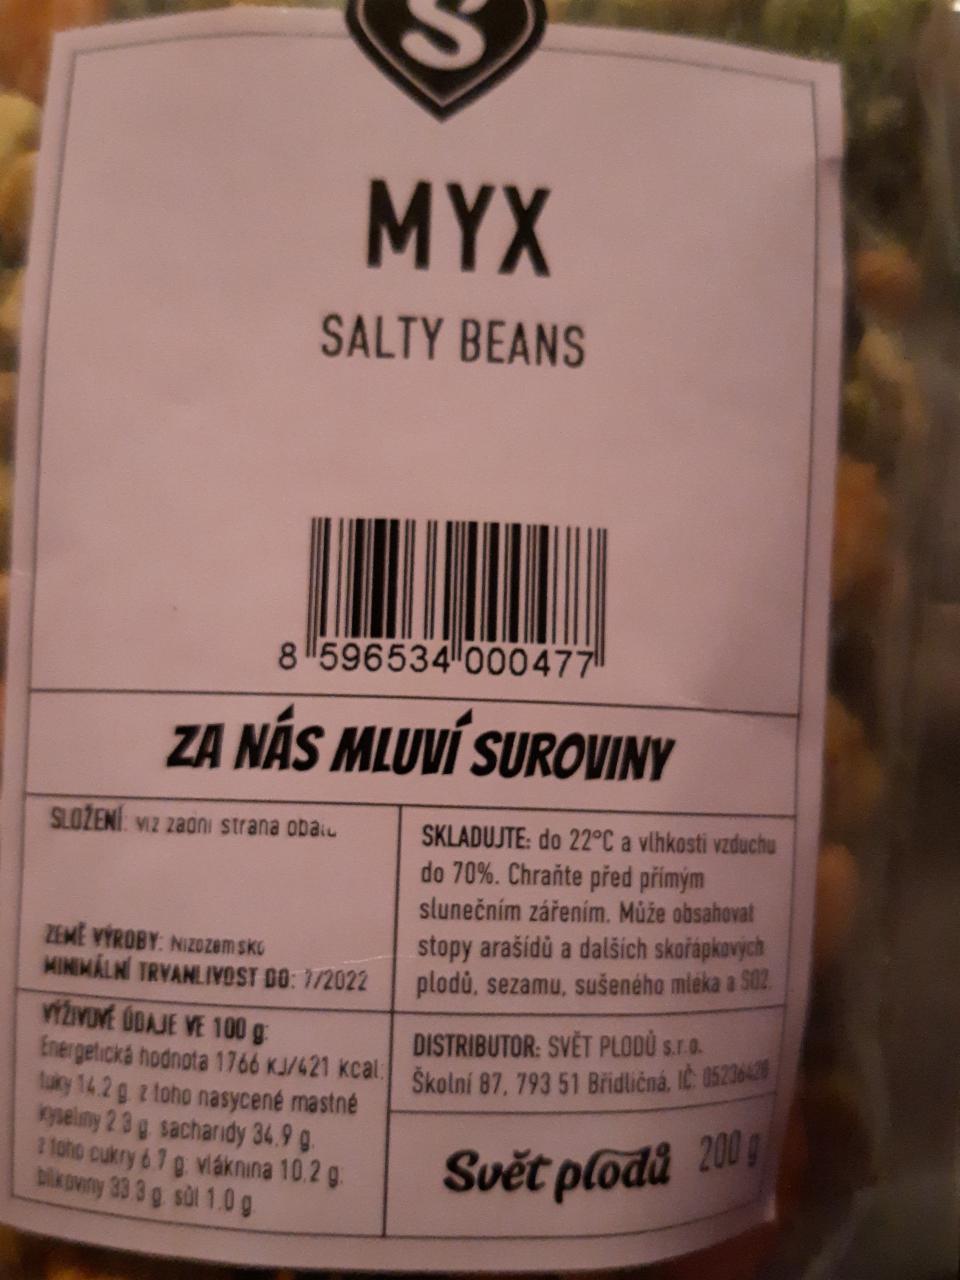 Fotografie - MYX Salty beans Svět plodů